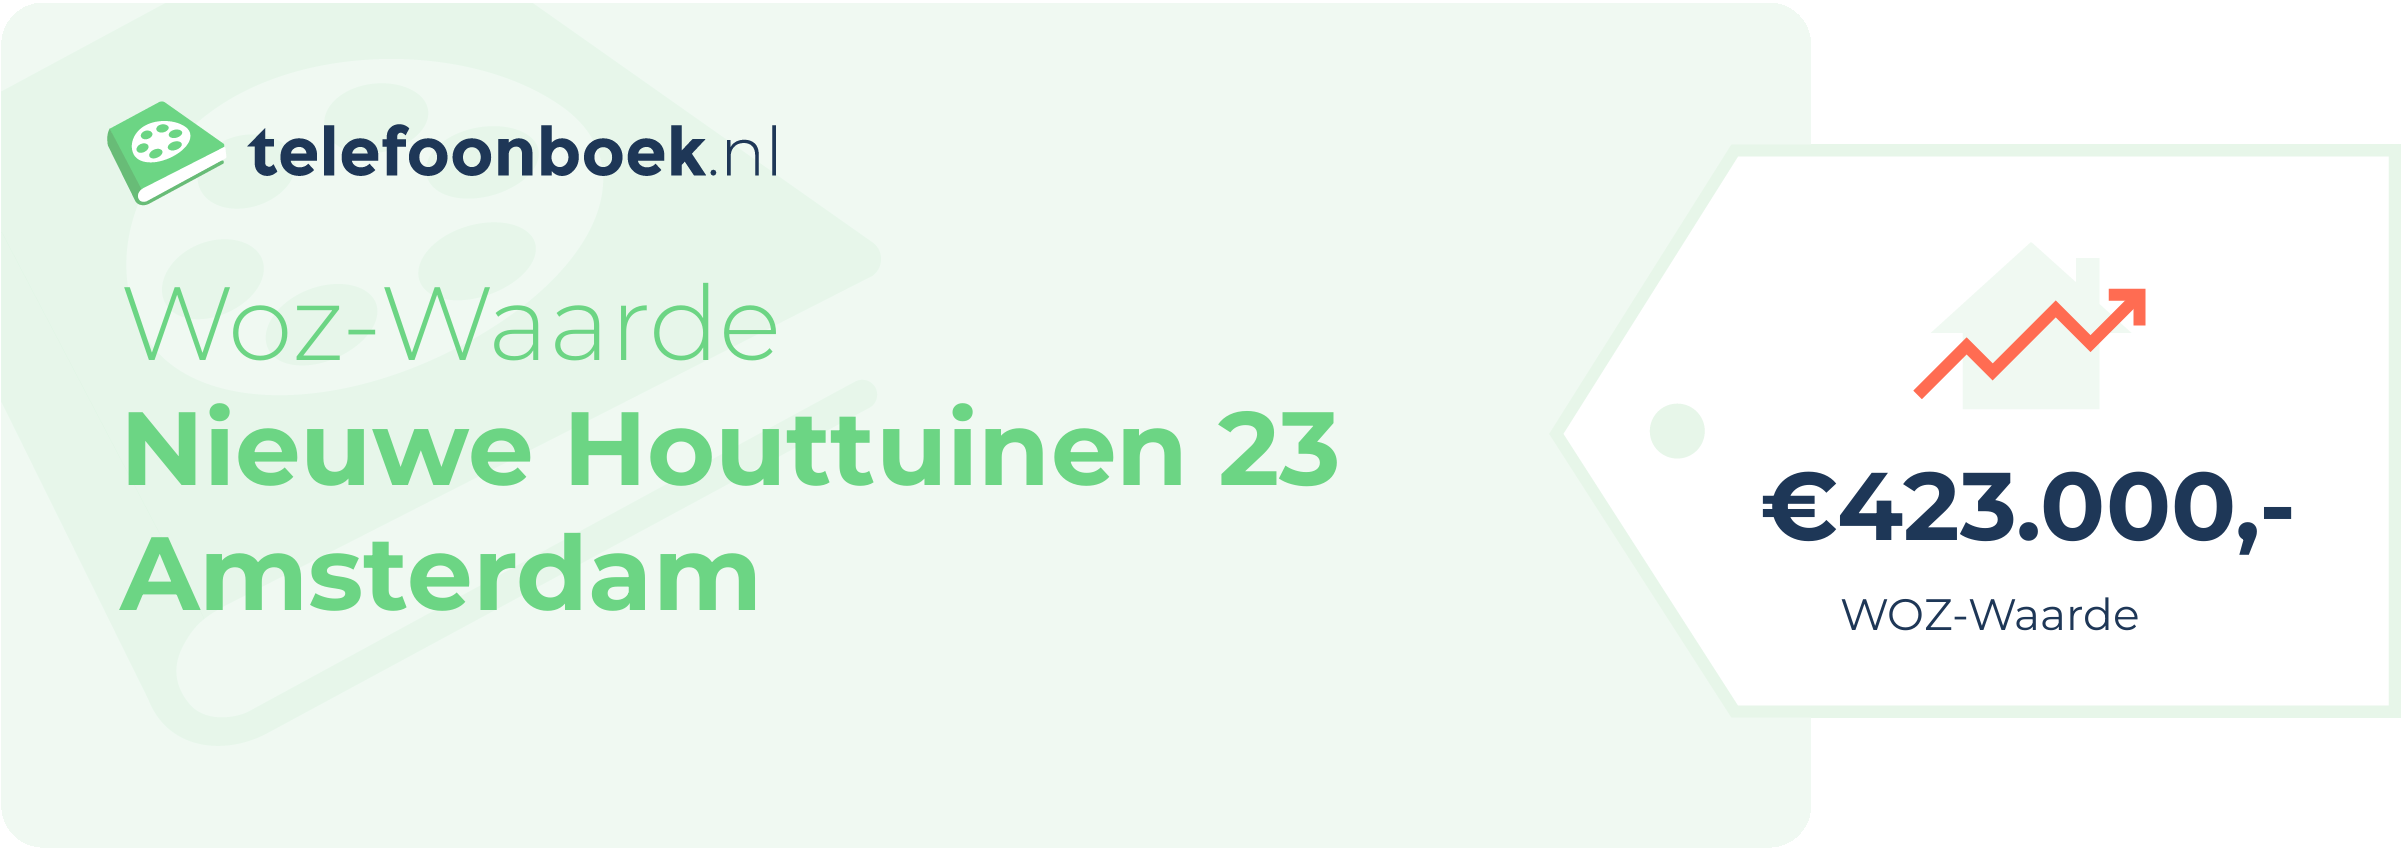 WOZ-waarde Nieuwe Houttuinen 23 Amsterdam